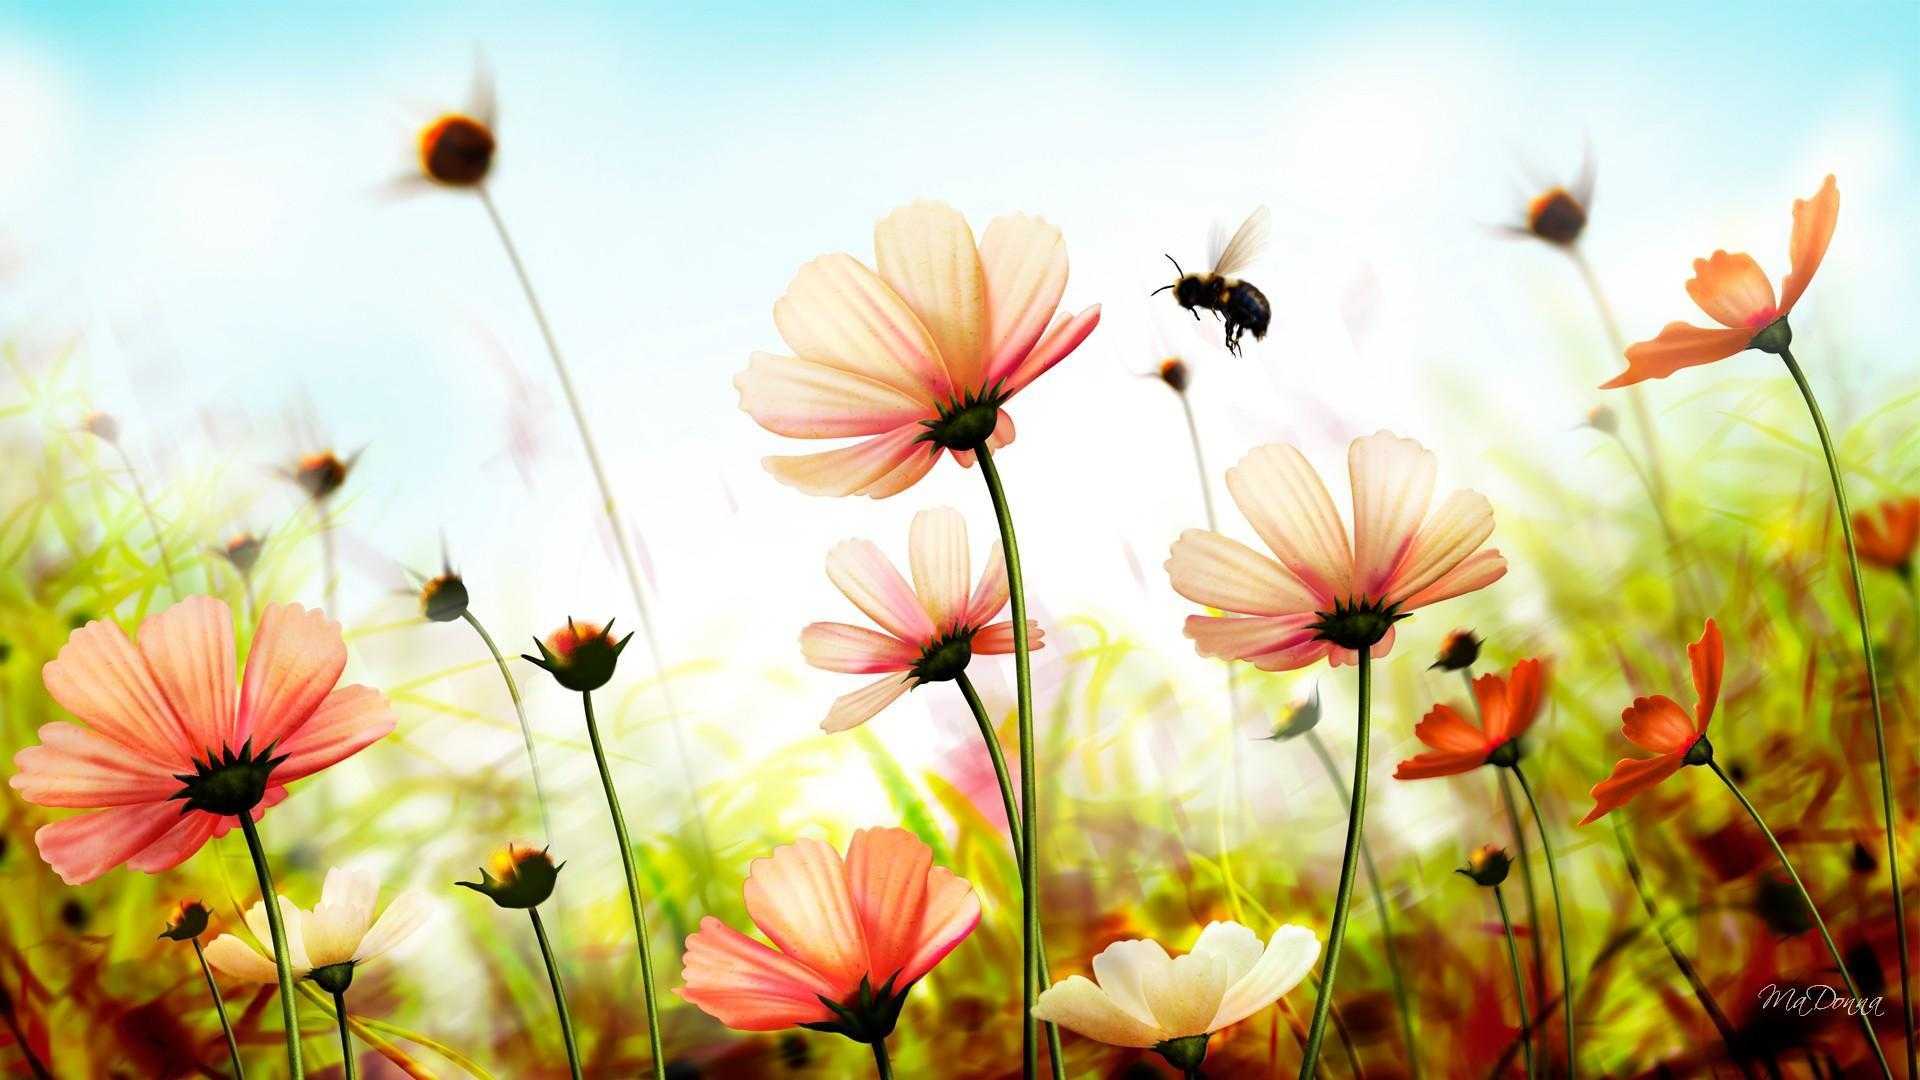 عکس قشنگ و شیک تابستانی از گل های صورتی و زنبور وحشی